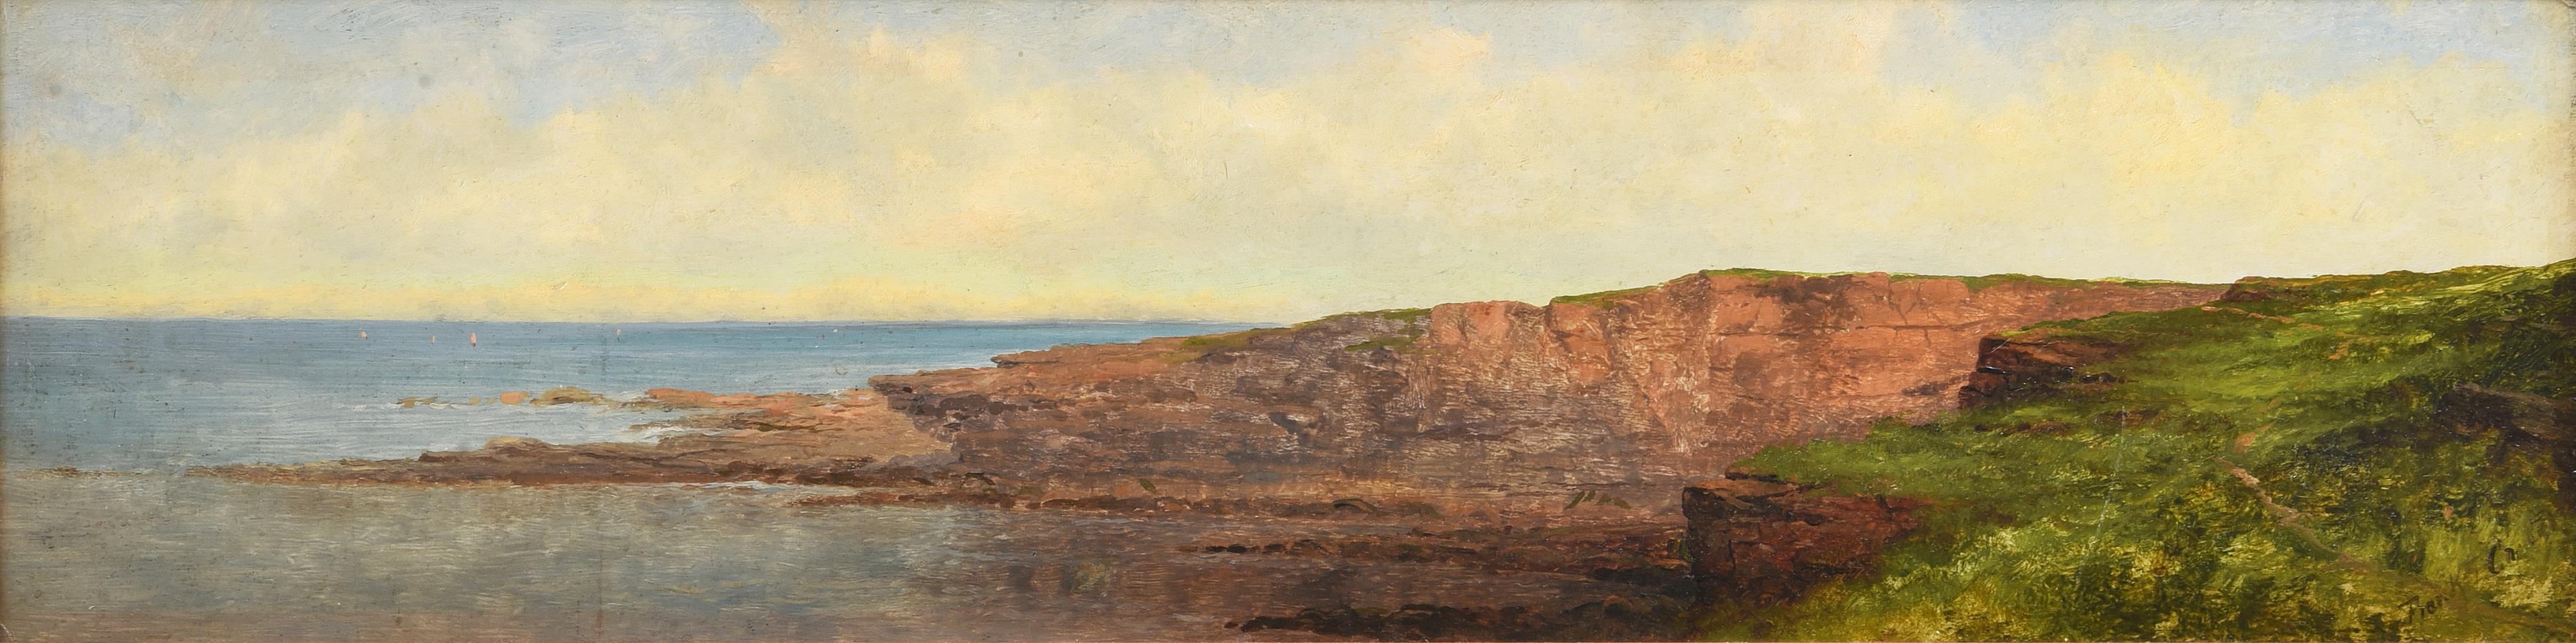 FRANK THOMAS CARTER (BRITISH 1853-1934), NORTHUMBERLAND COAST - Image 2 of 3